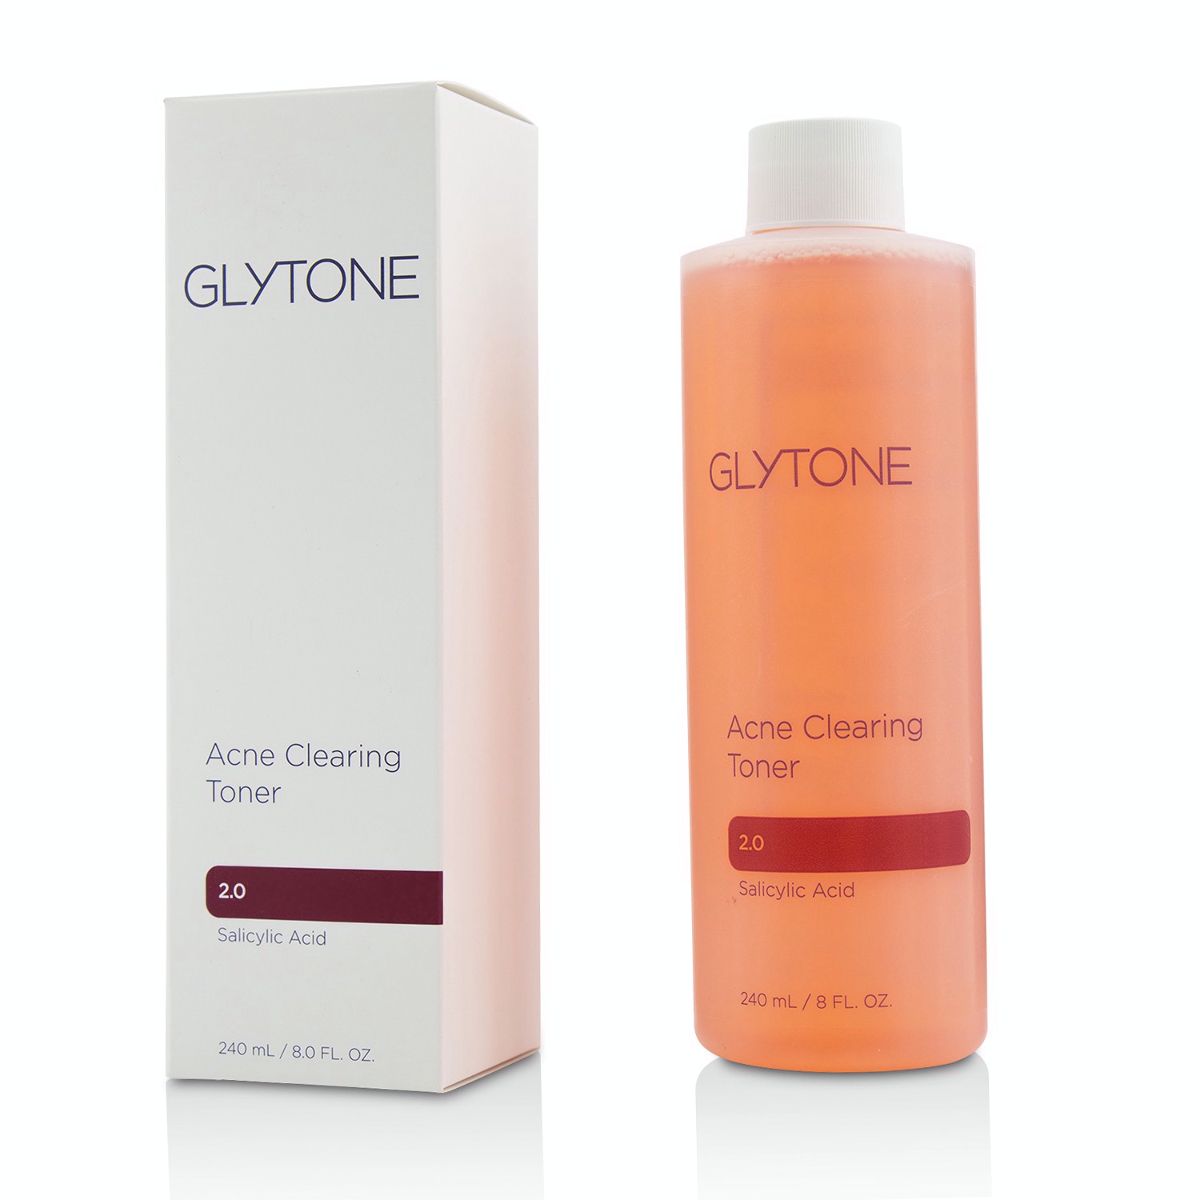 Acne Clearing Toner Glytone Image